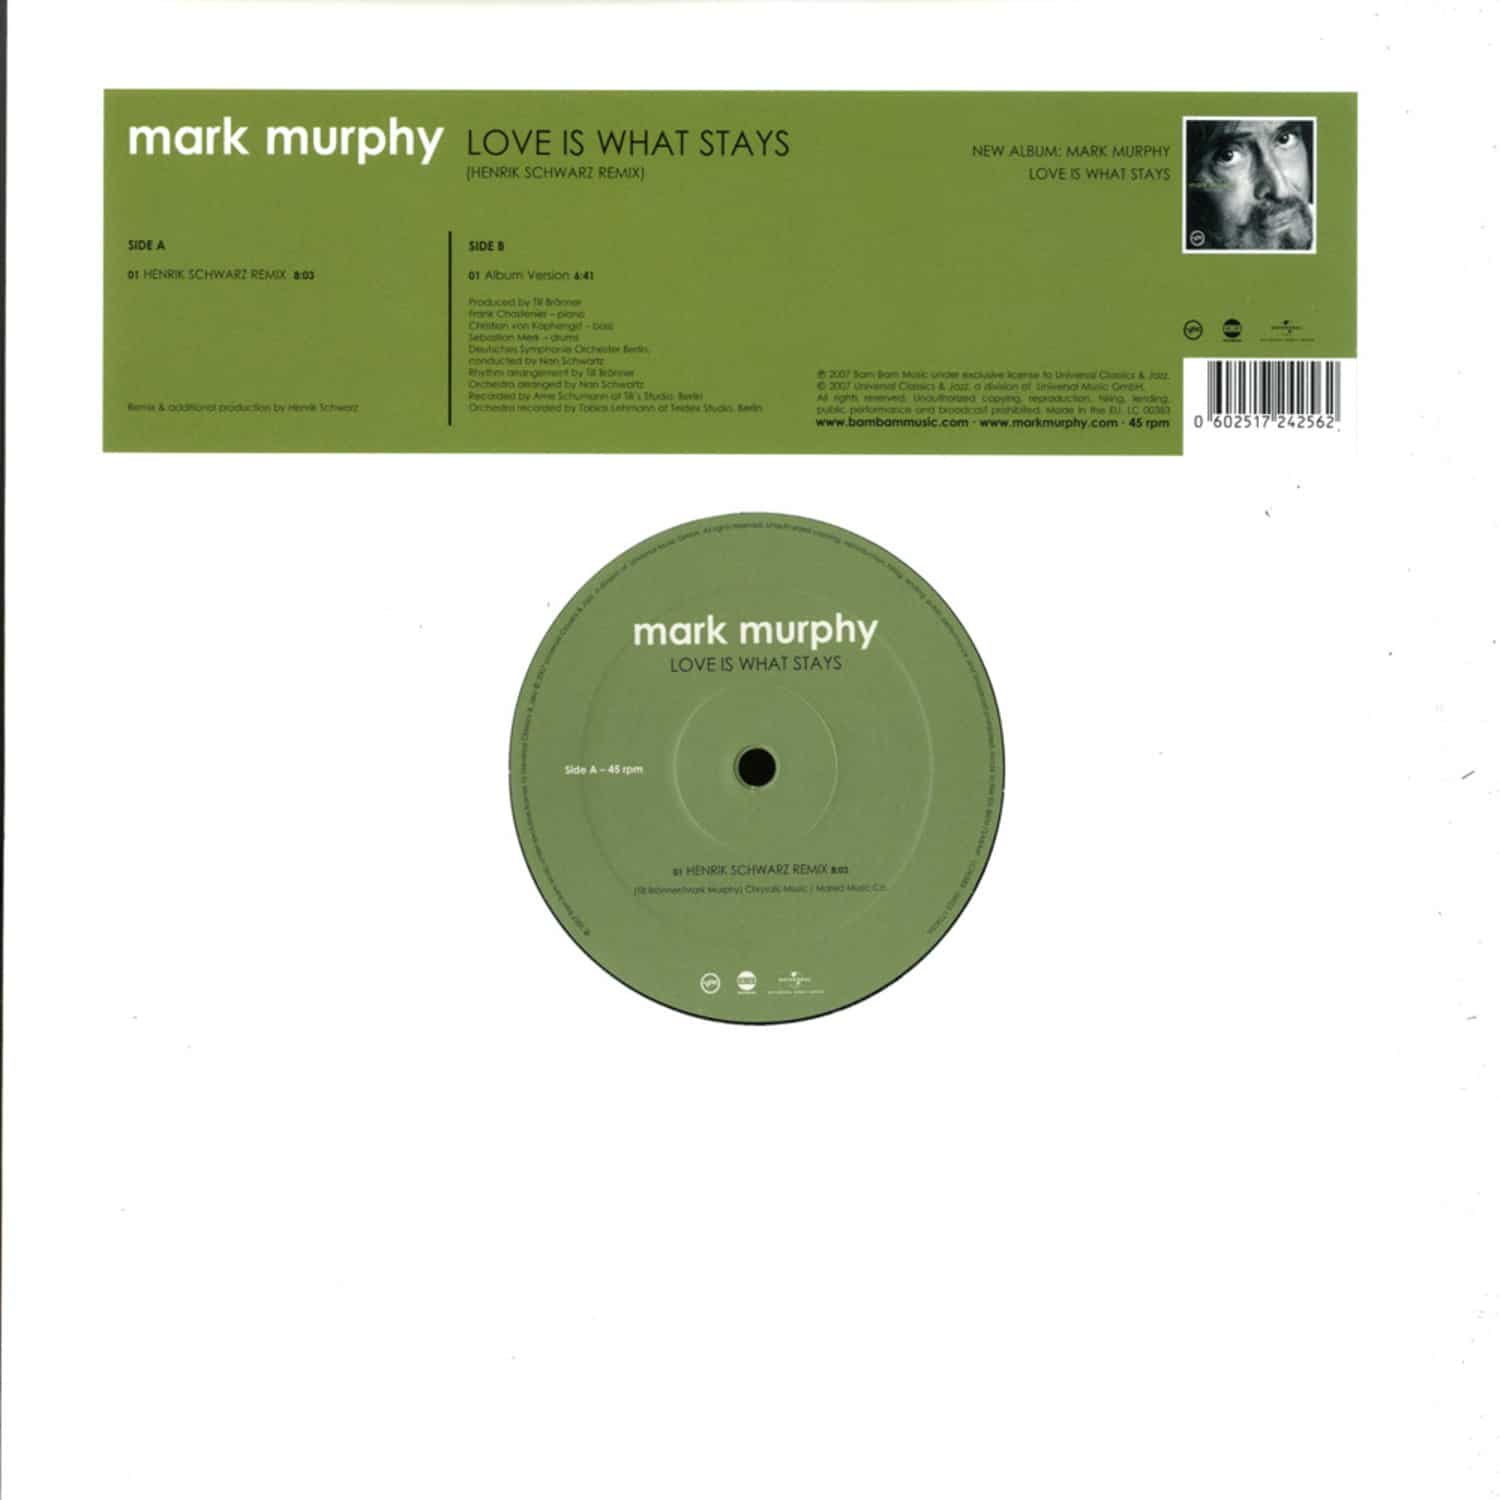 Mark Murphy - LOVE IS WHAT STAYS / HENRIK SCHWARZ RMX